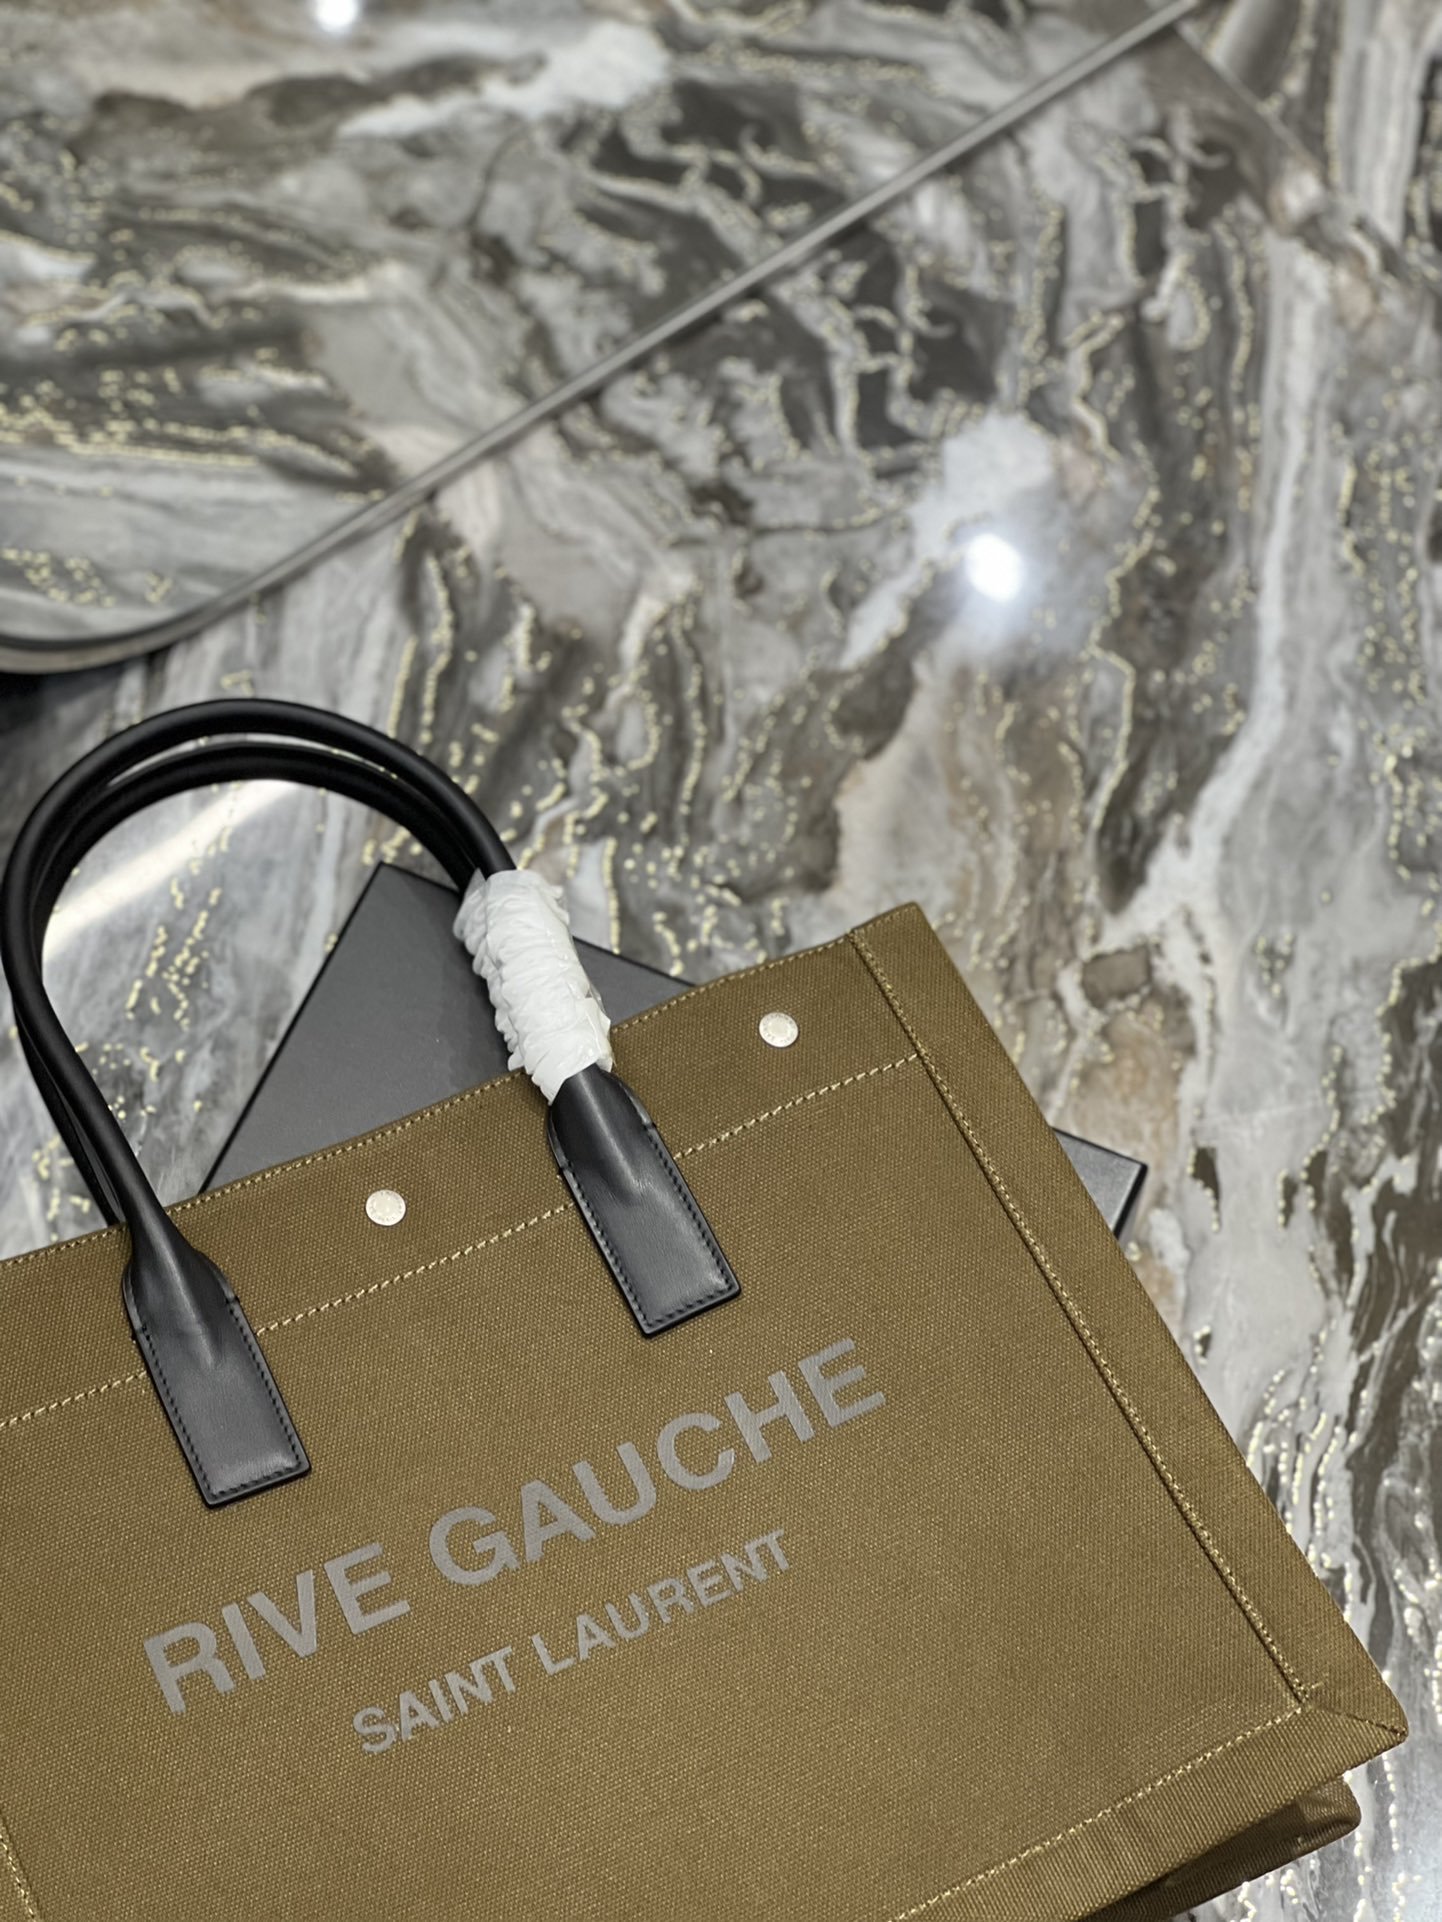 Сумка Rive Gauche Tote Bag 39 см фото 9